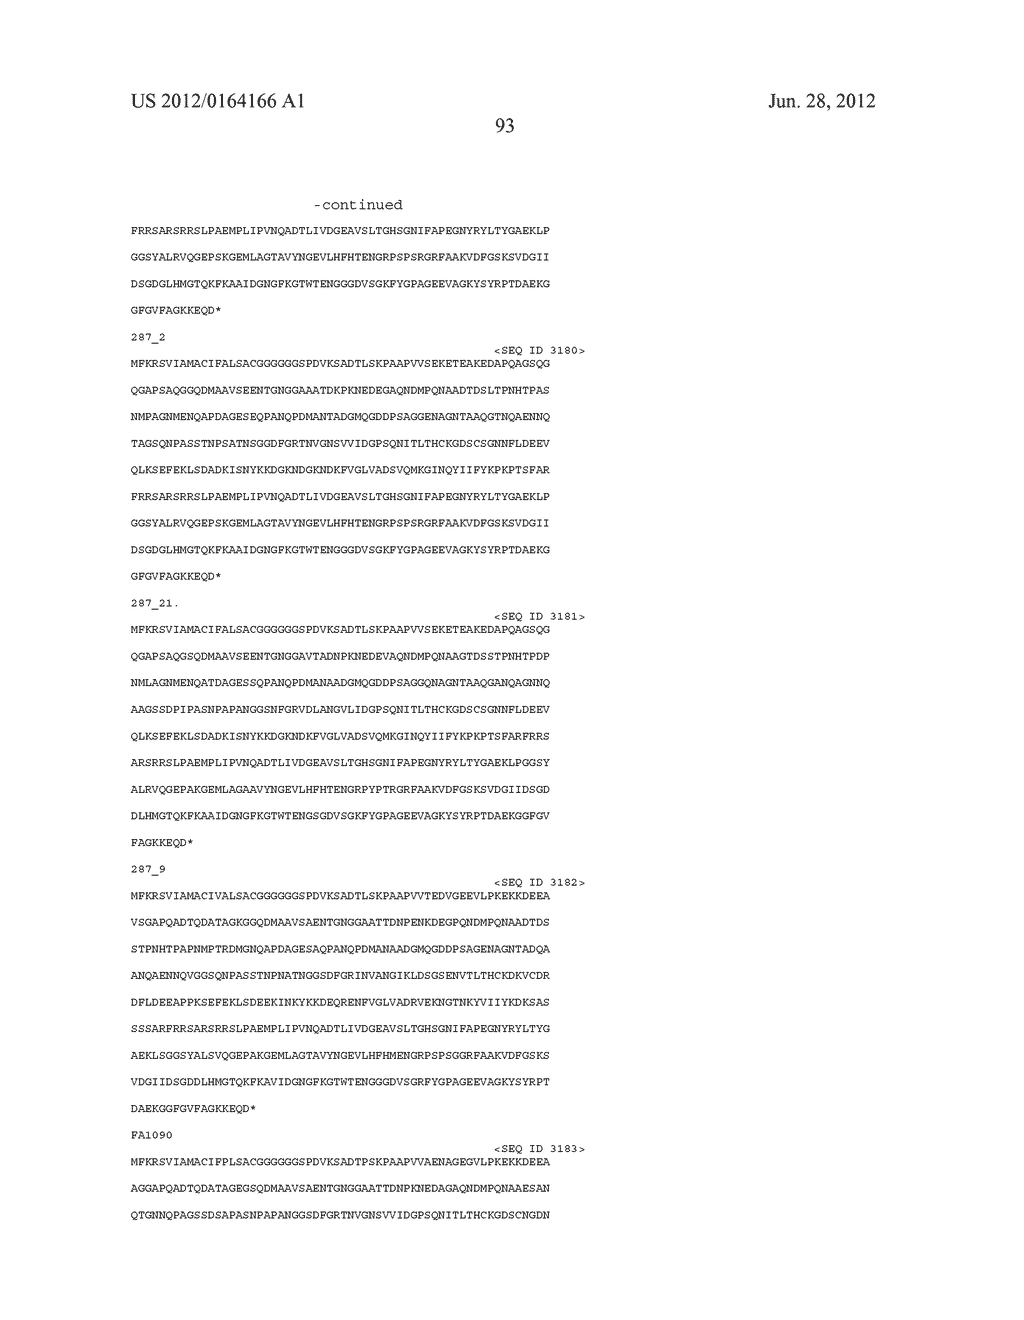 NEISSERIA MENINGITIDIS ANTIGENS AND COMPOSITIONS - diagram, schematic, and image 125